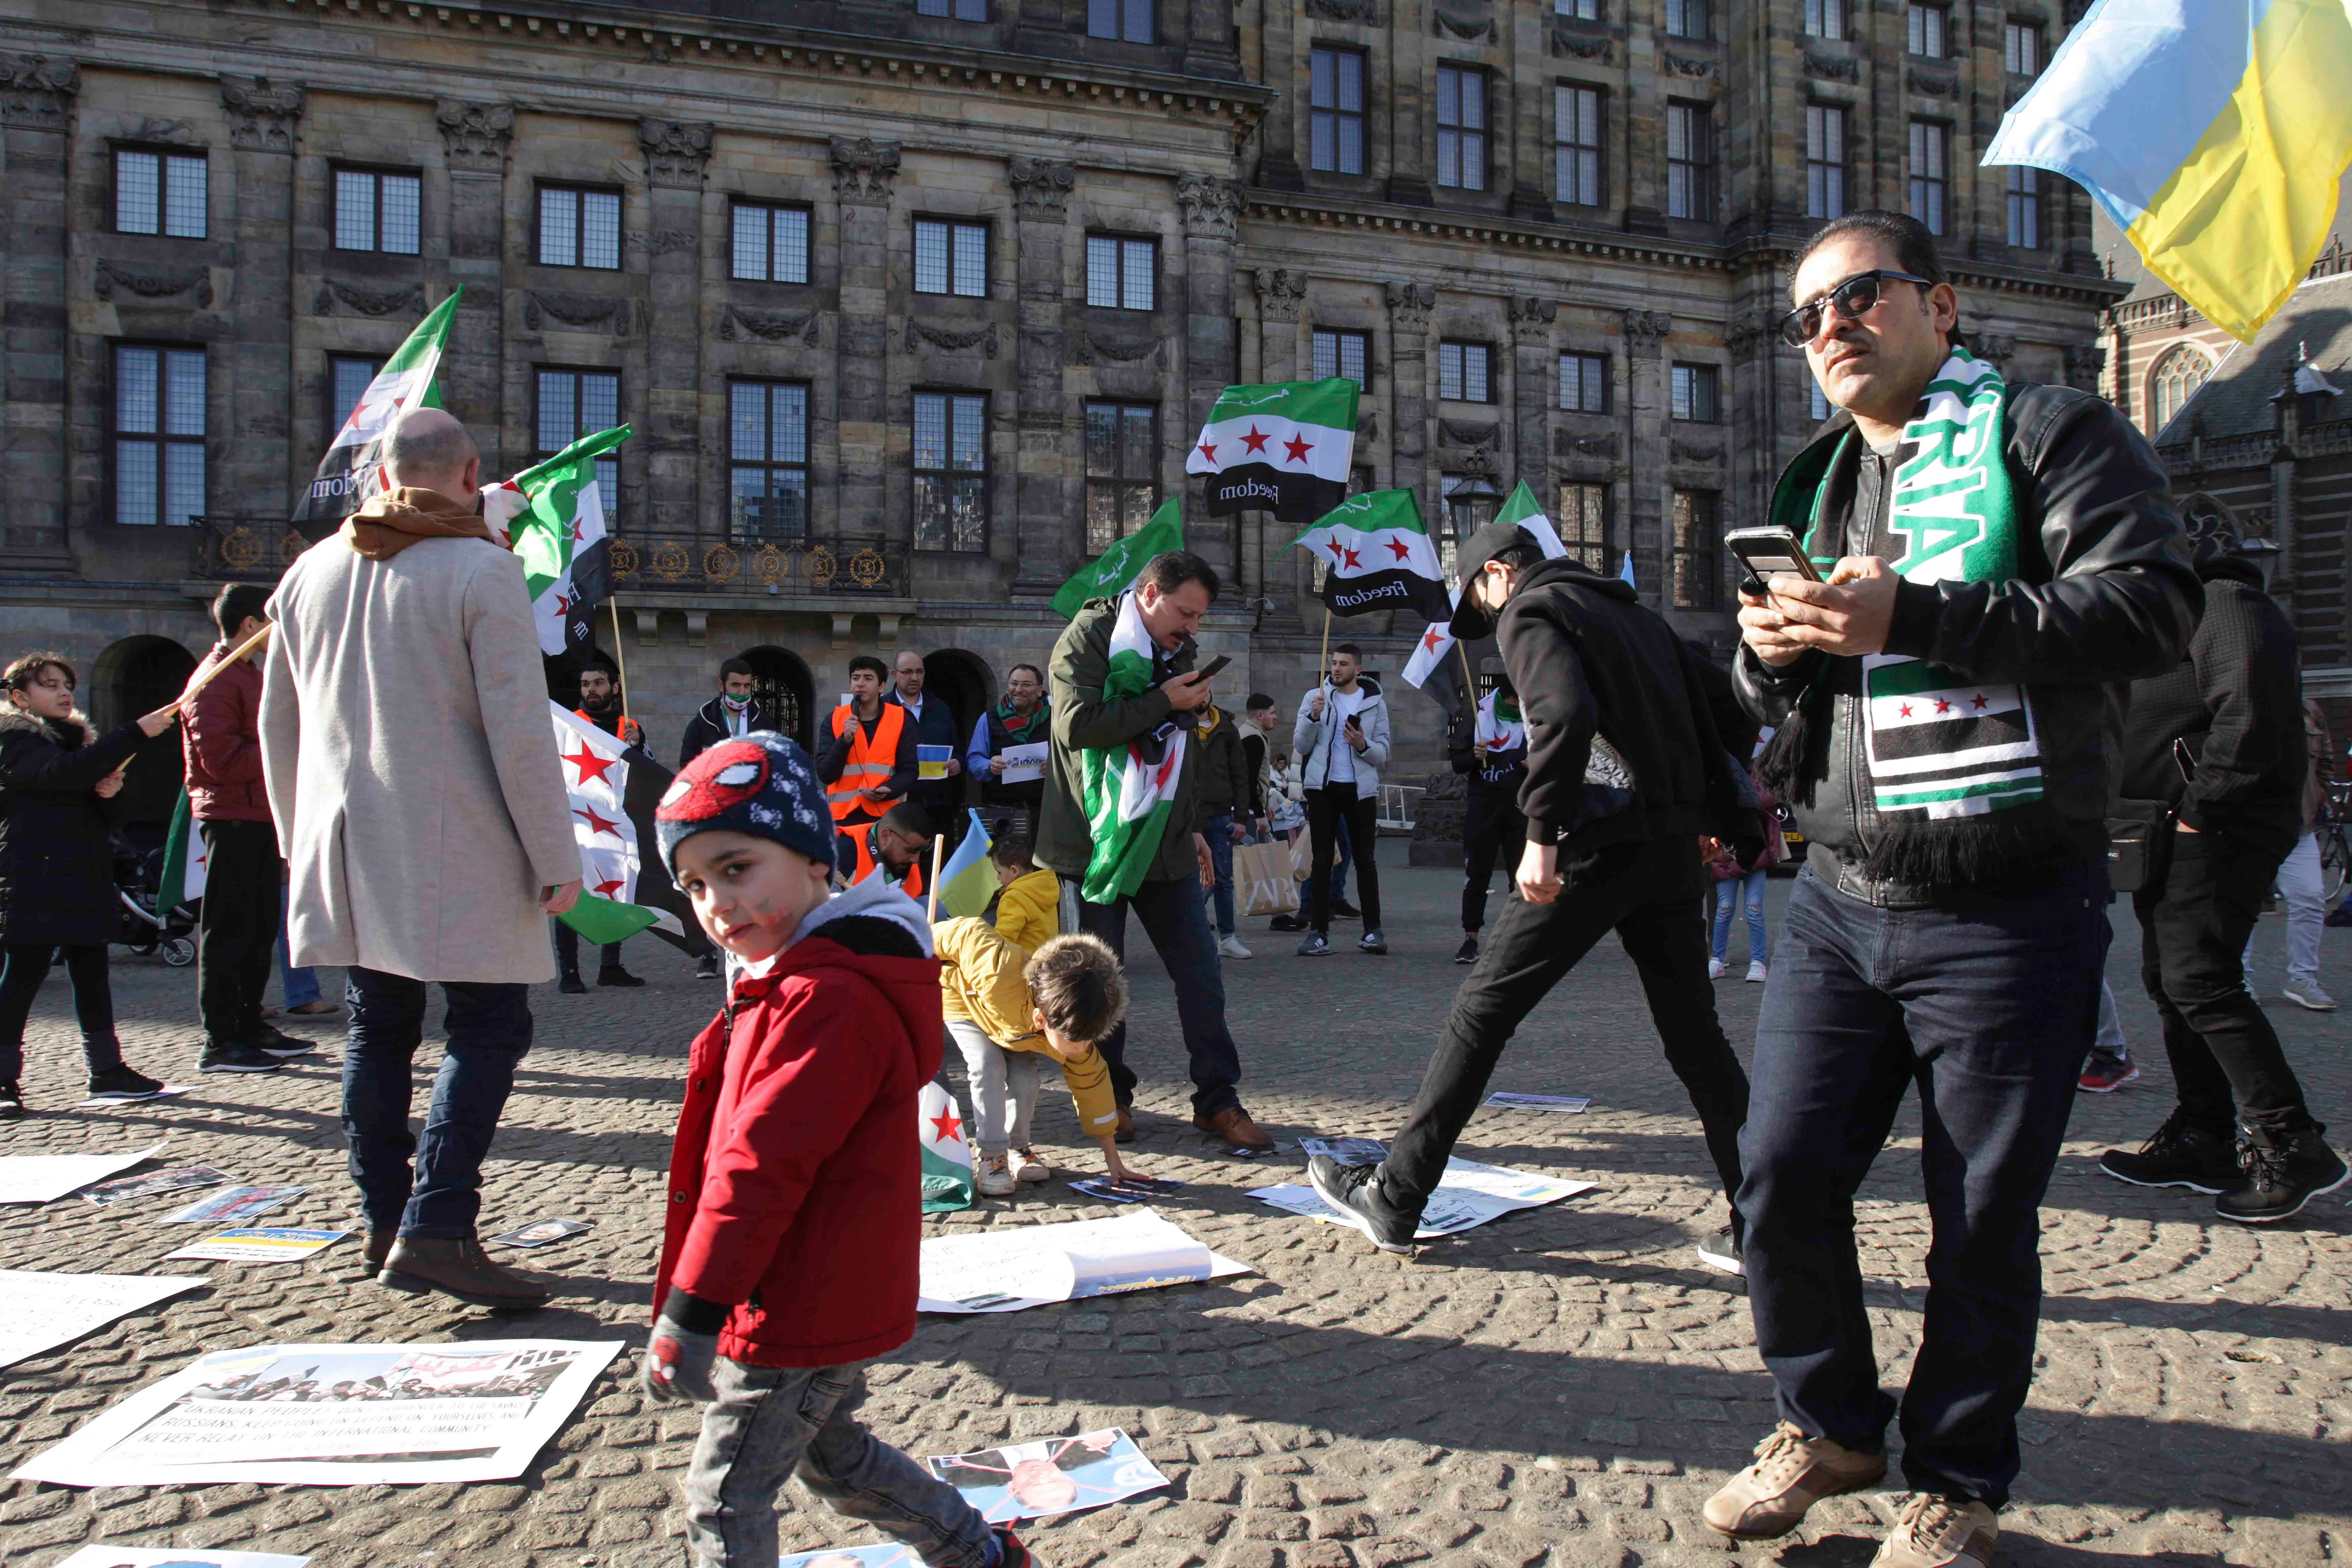 سوريون يشاركون في مظاهرة "سوريا بدها حرية" احتجاجا على هجمات القوات المسلحة السورية وحلفائها على المدنيين، بالإضافة إلى الاجتياح الروسي الشامل لأوكرانيا في ساحة دام، 26 فبراير/شباط 2022 في أمستردام، هولندا. 